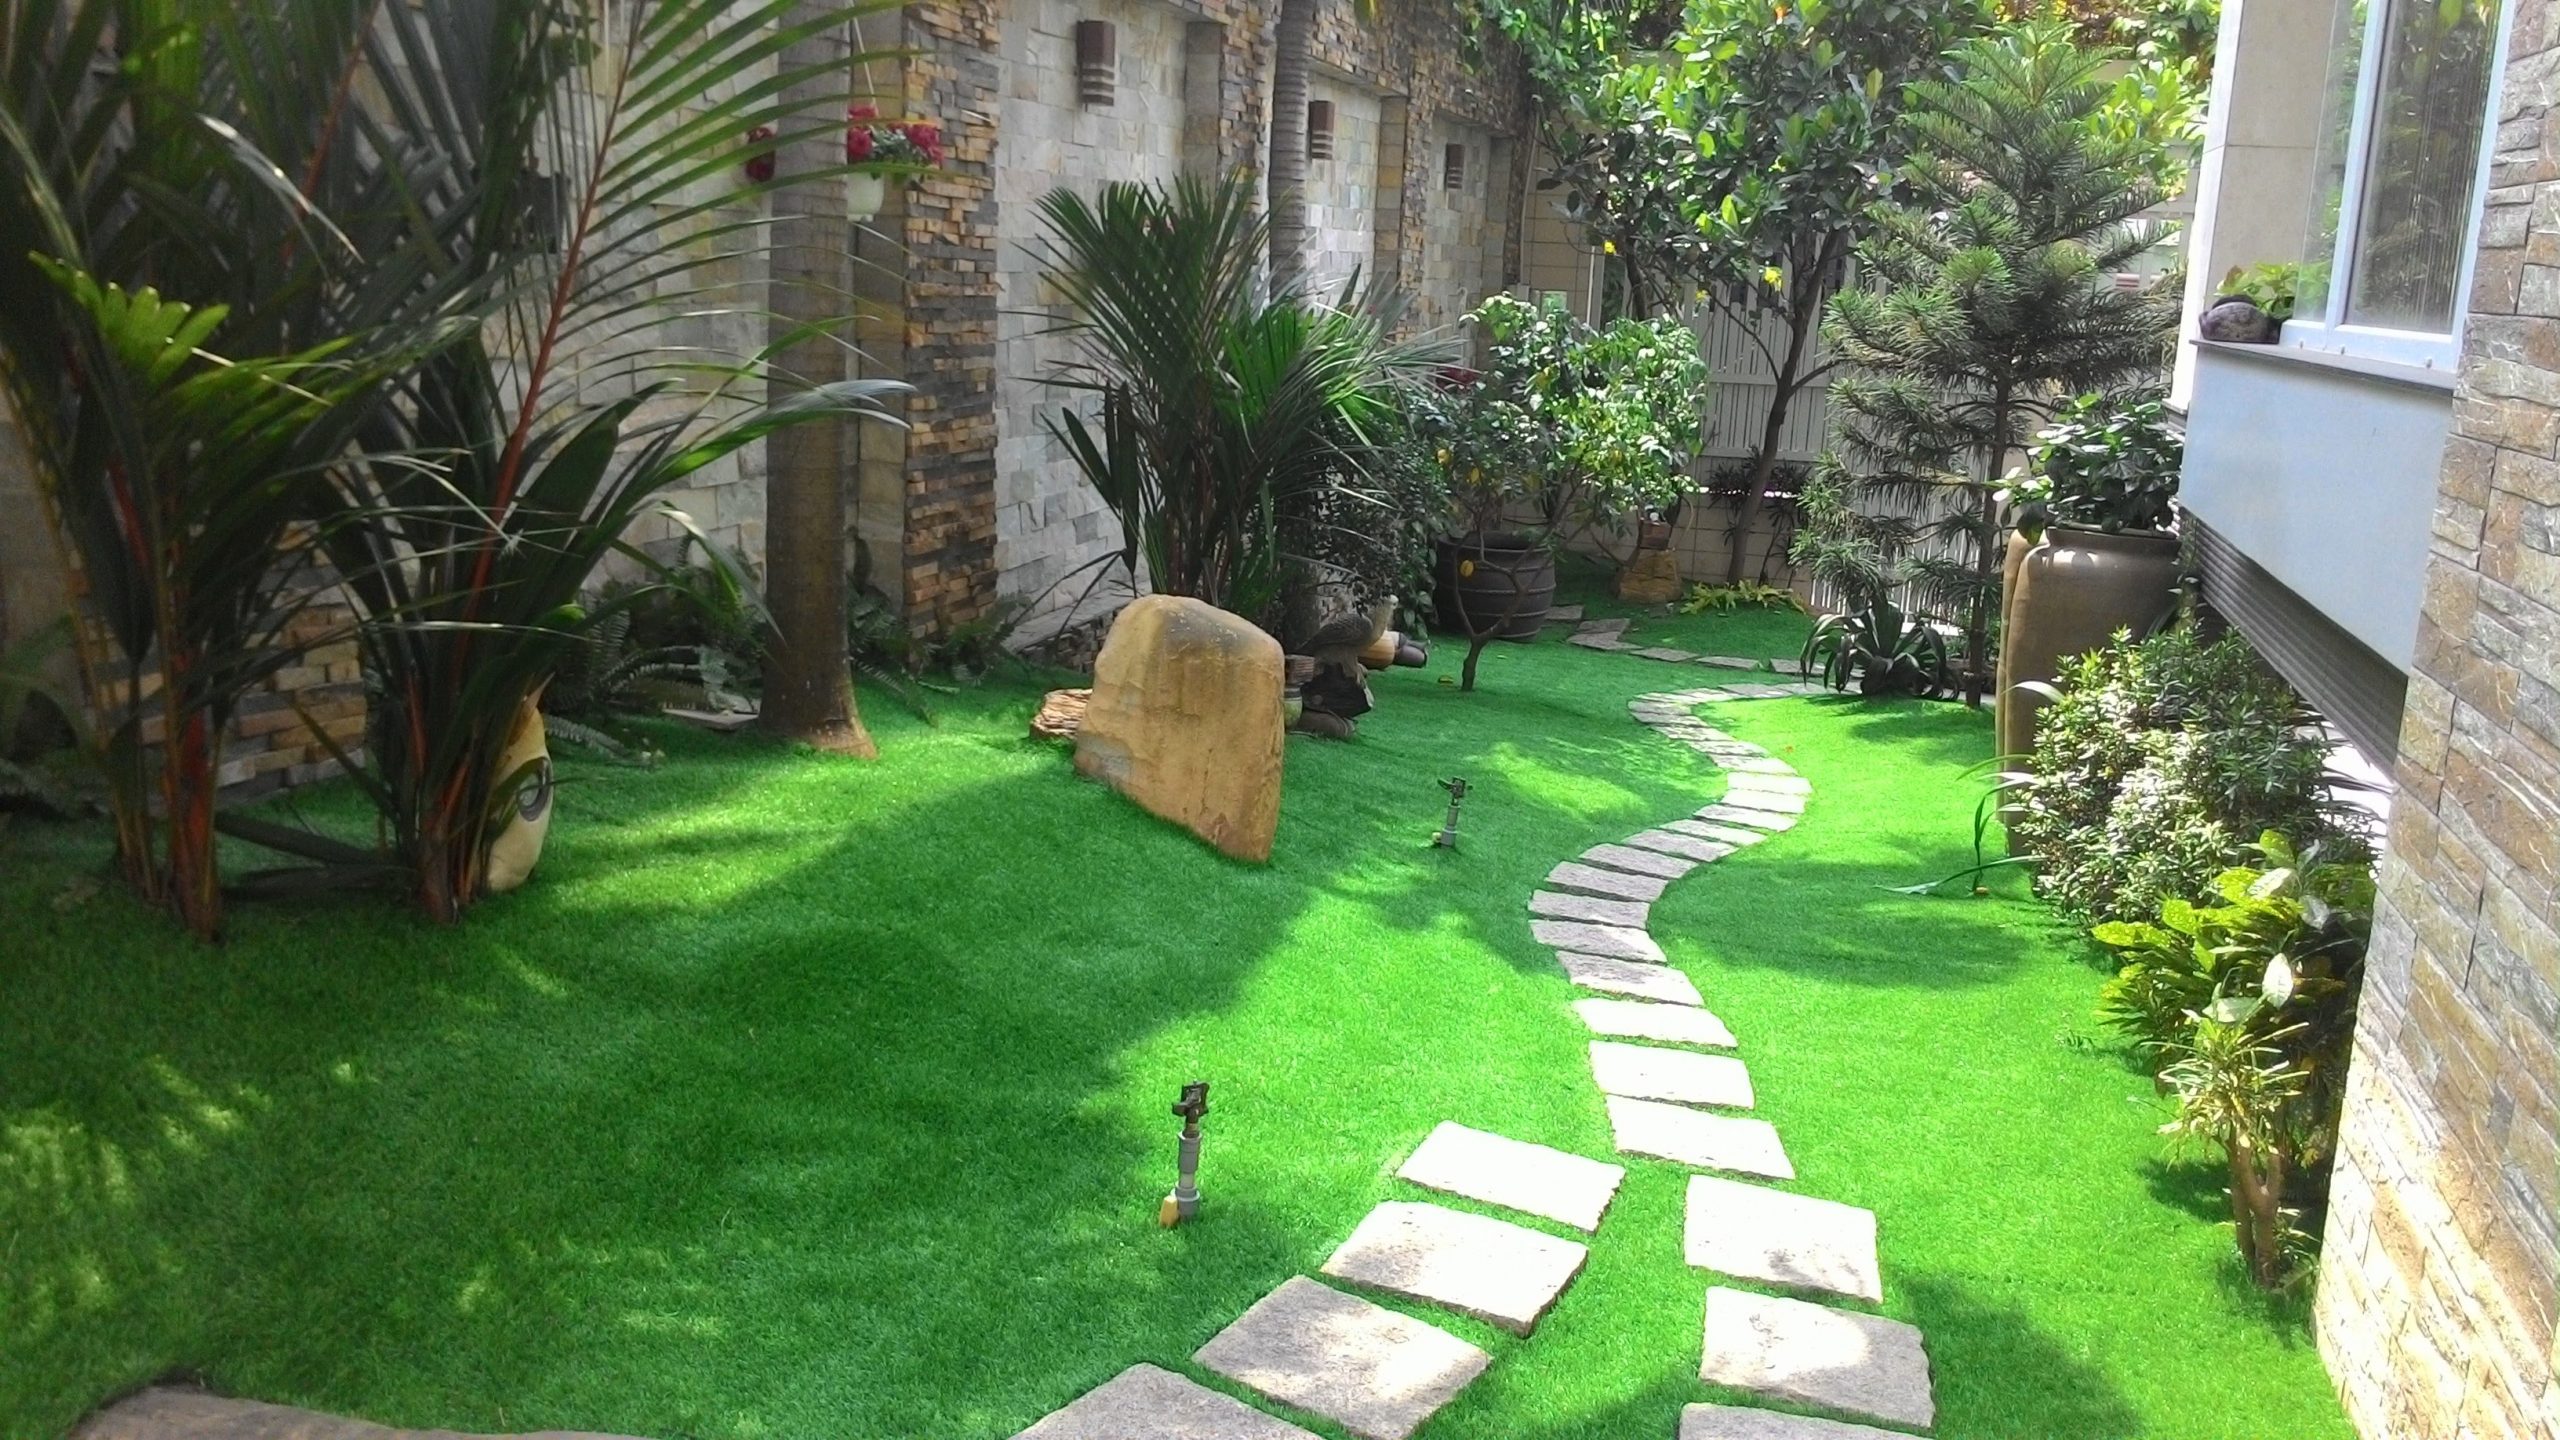 Keo dán cỏ nhân tạo - Lựa chọn tối ưu cho sân vườn